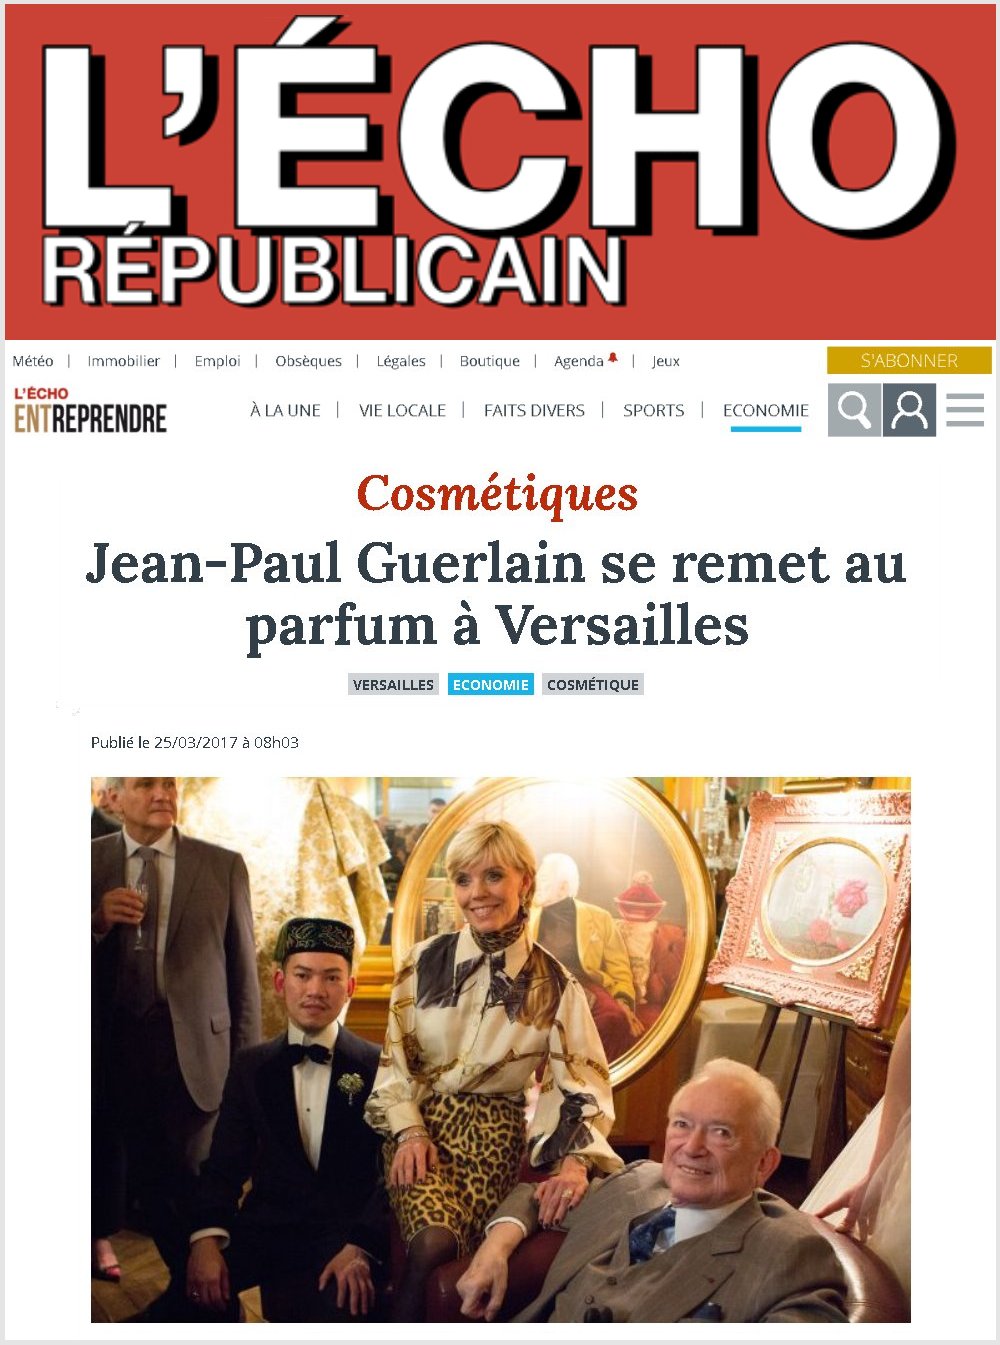 Jean-Paul Guerlain se remet au parfum à Versailles